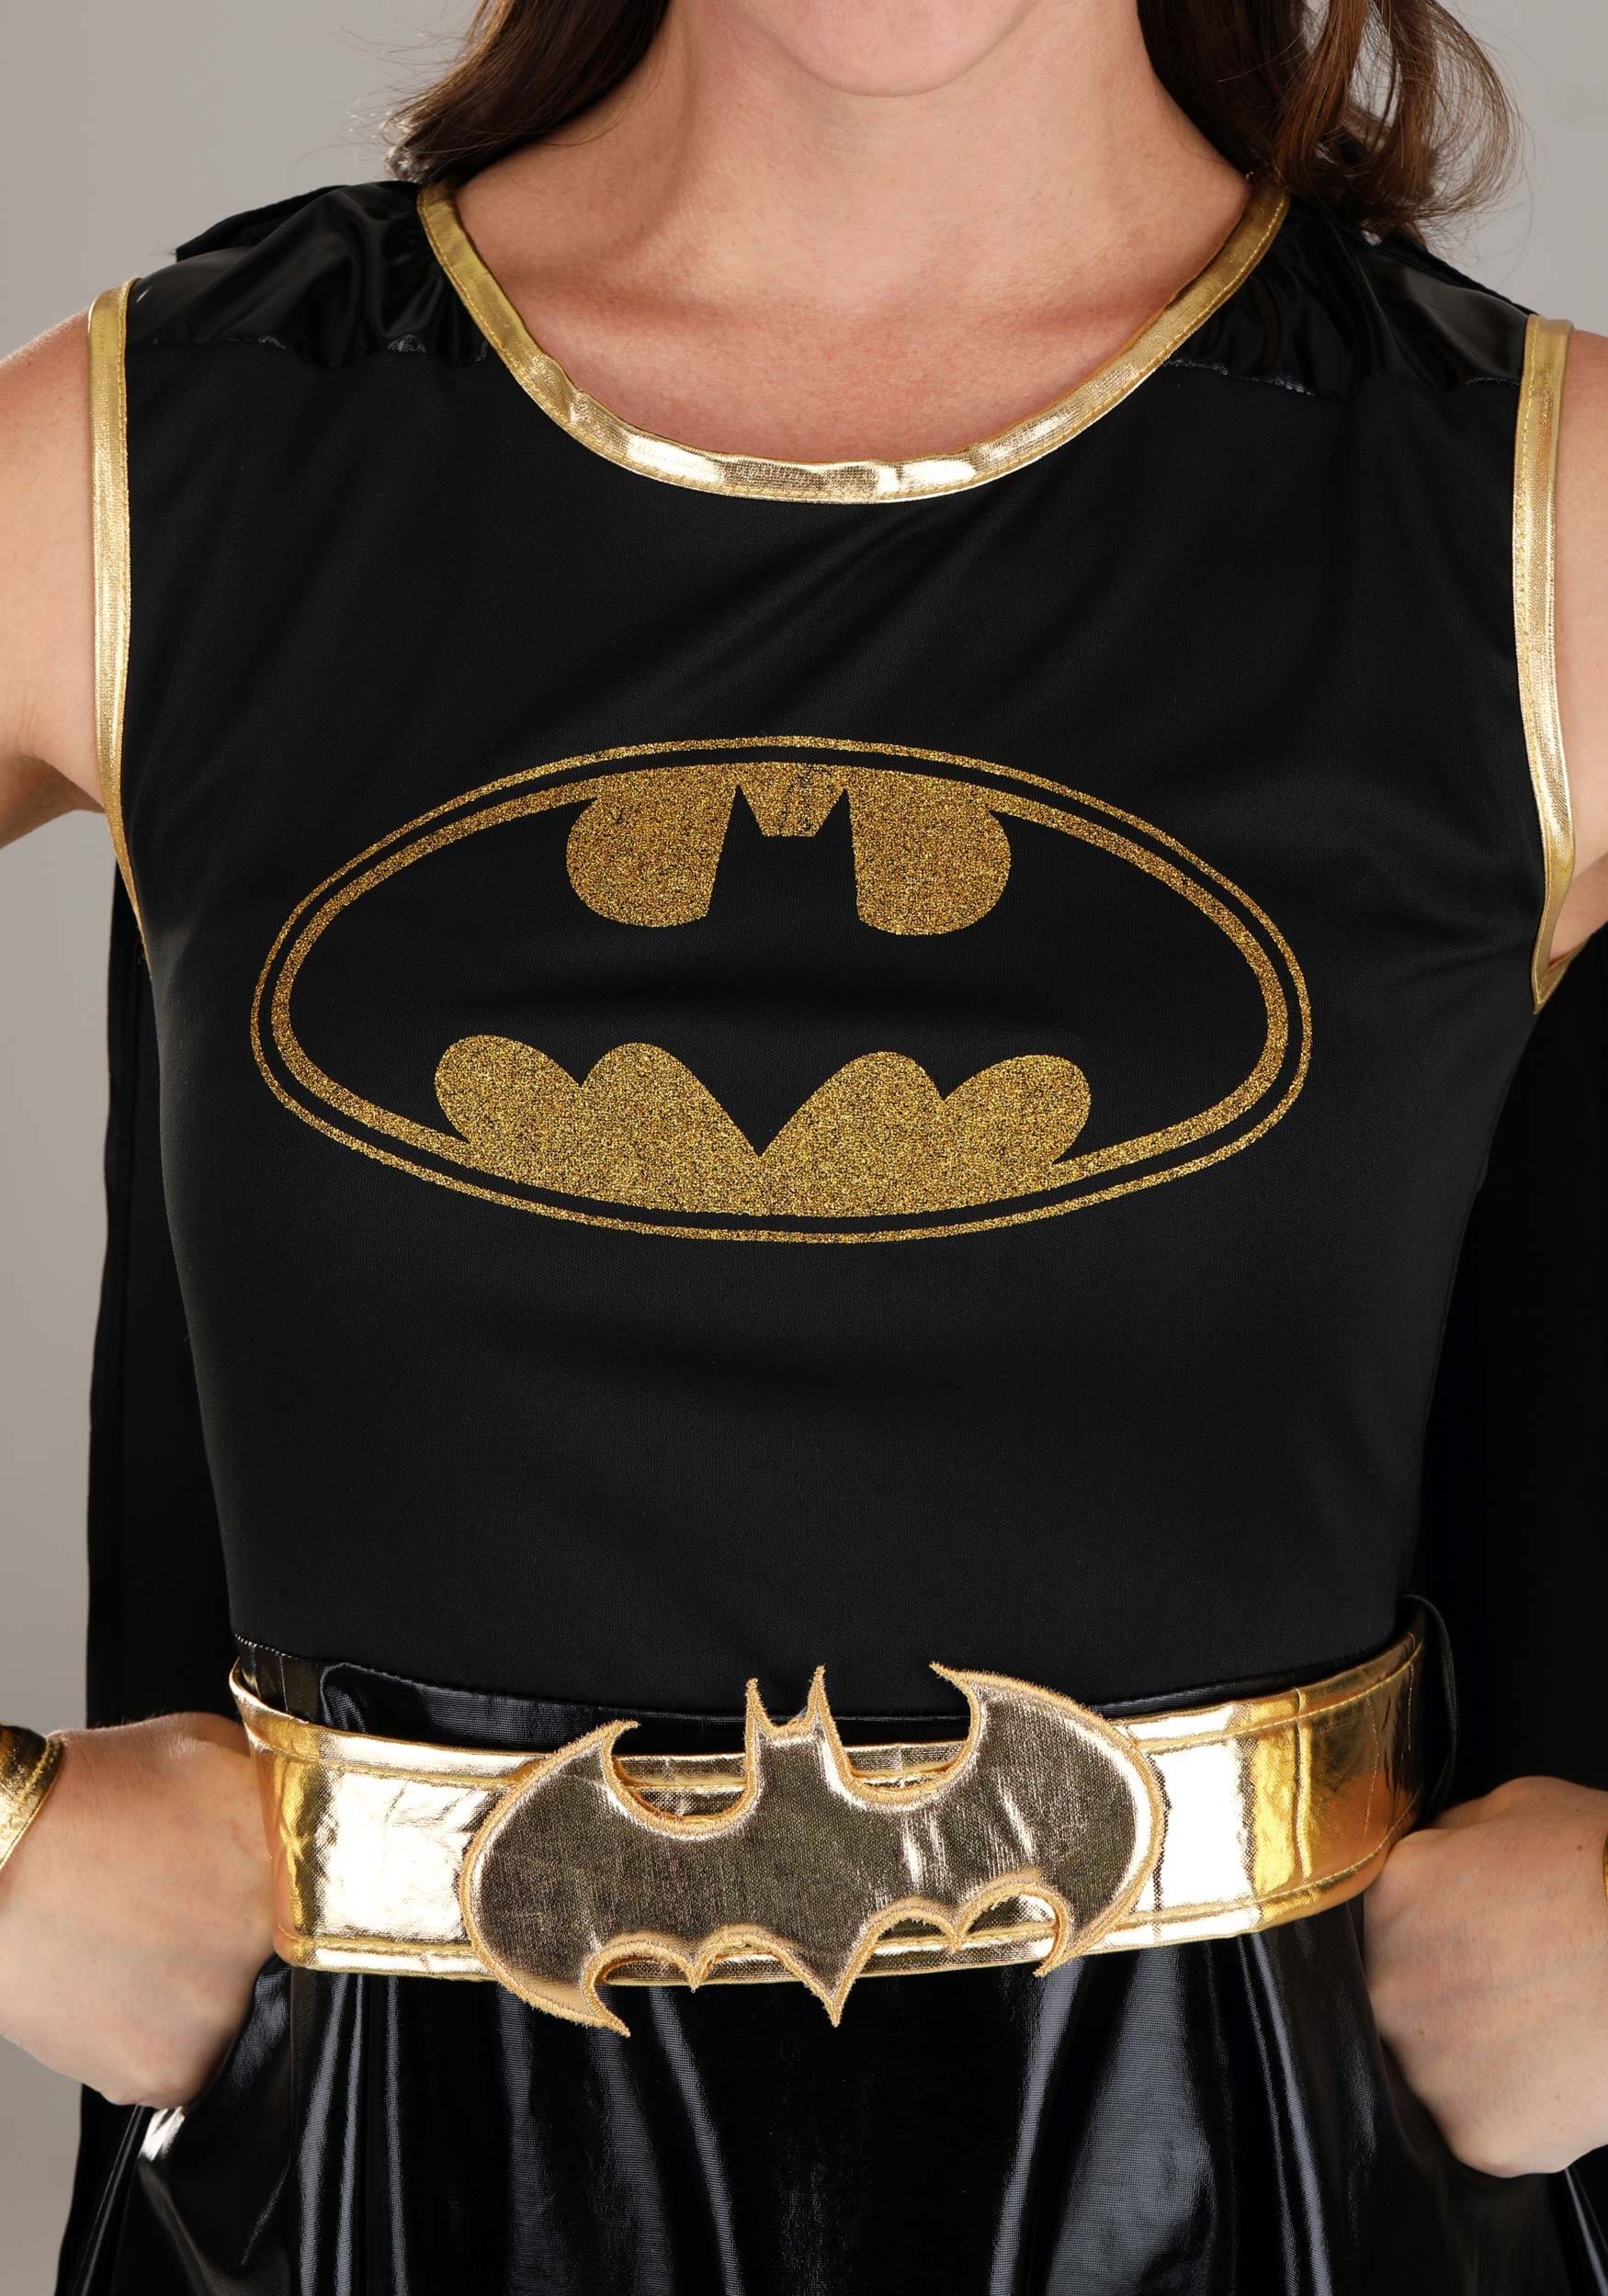 Heroic Women's Batgirl Costume